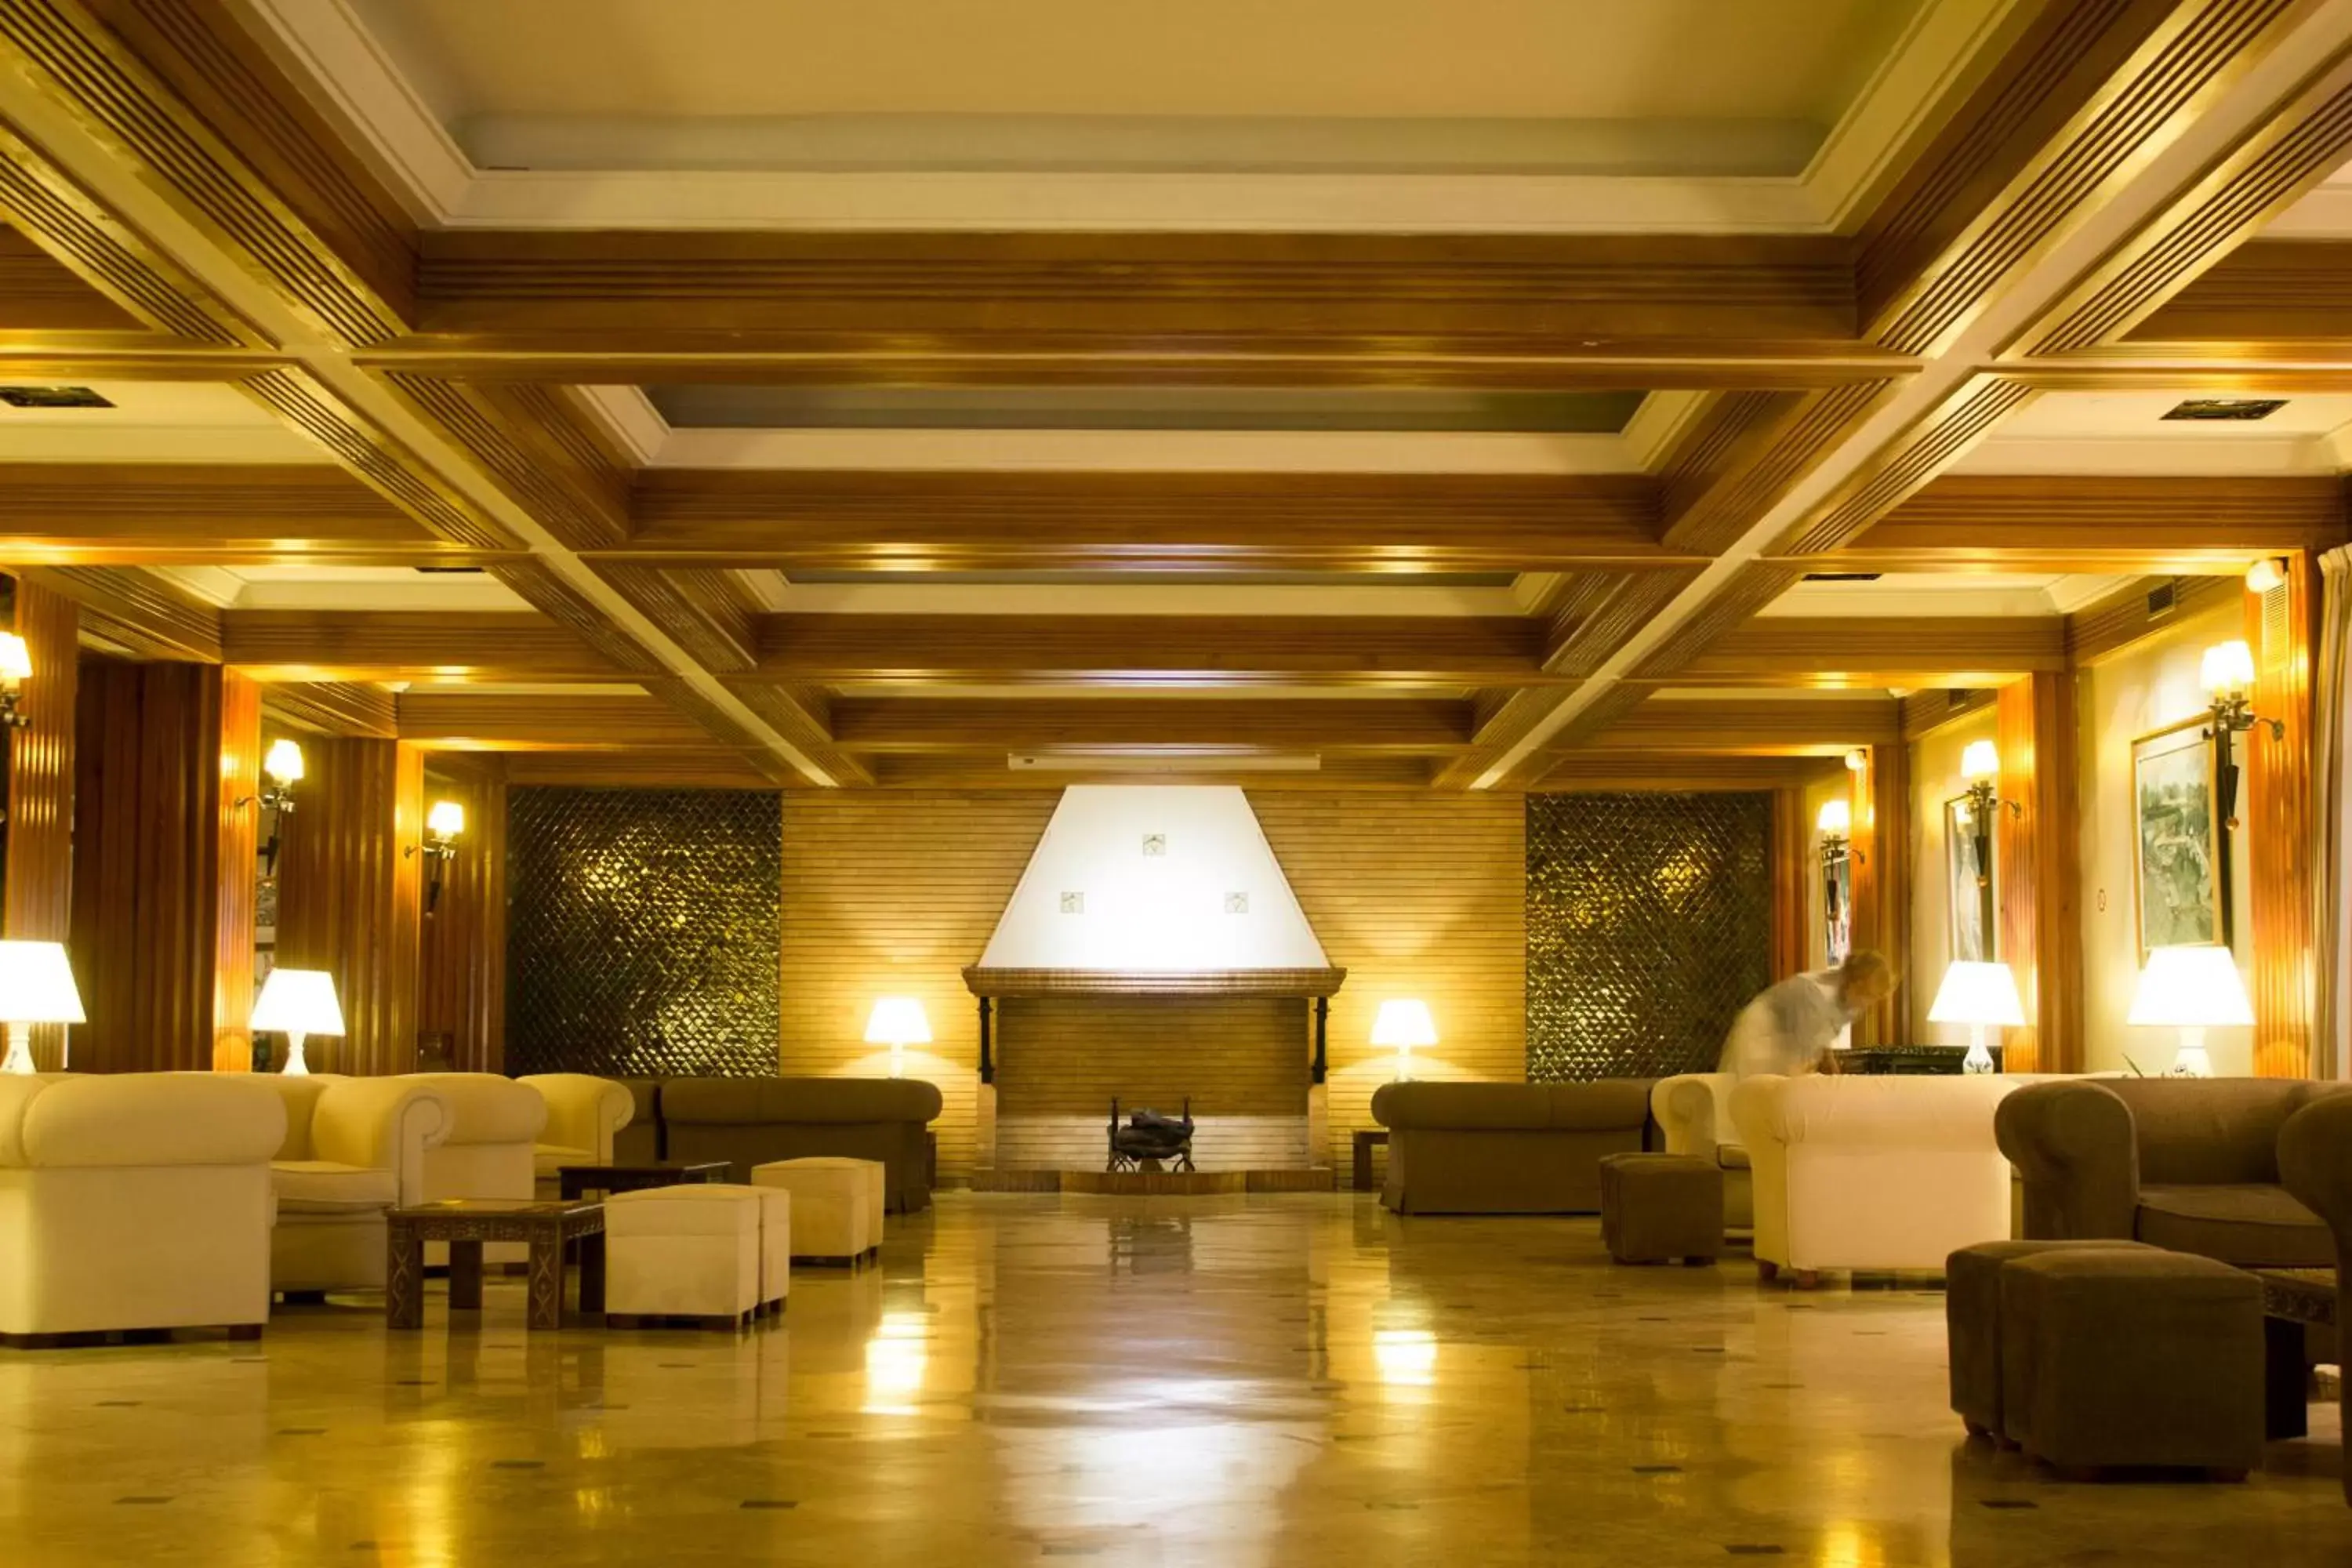 Lobby or reception, Lobby/Reception in Hotel Fernando III